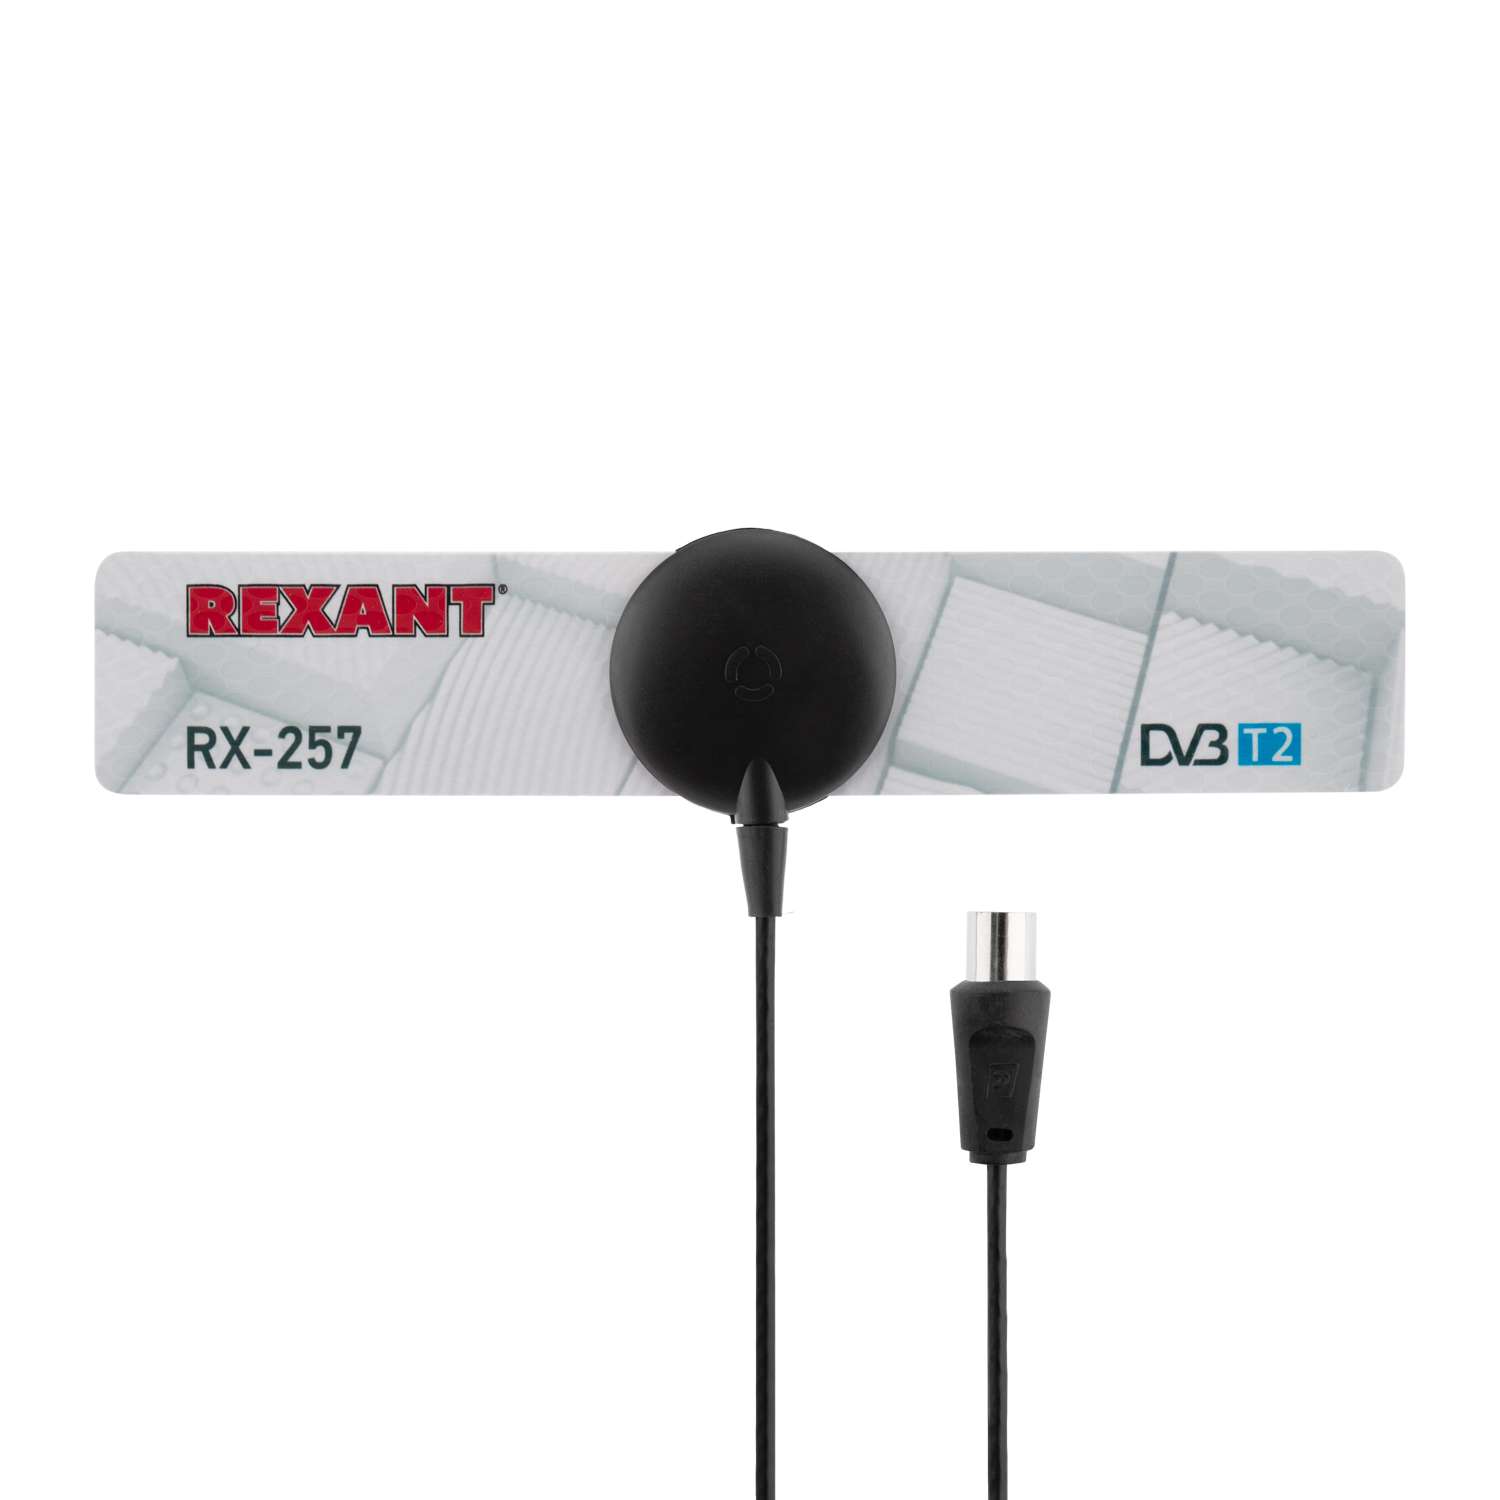 Антенна REXANT RX-257 комнатная активная для цифрового ТВ DVB-T2 на присоске - фото 2